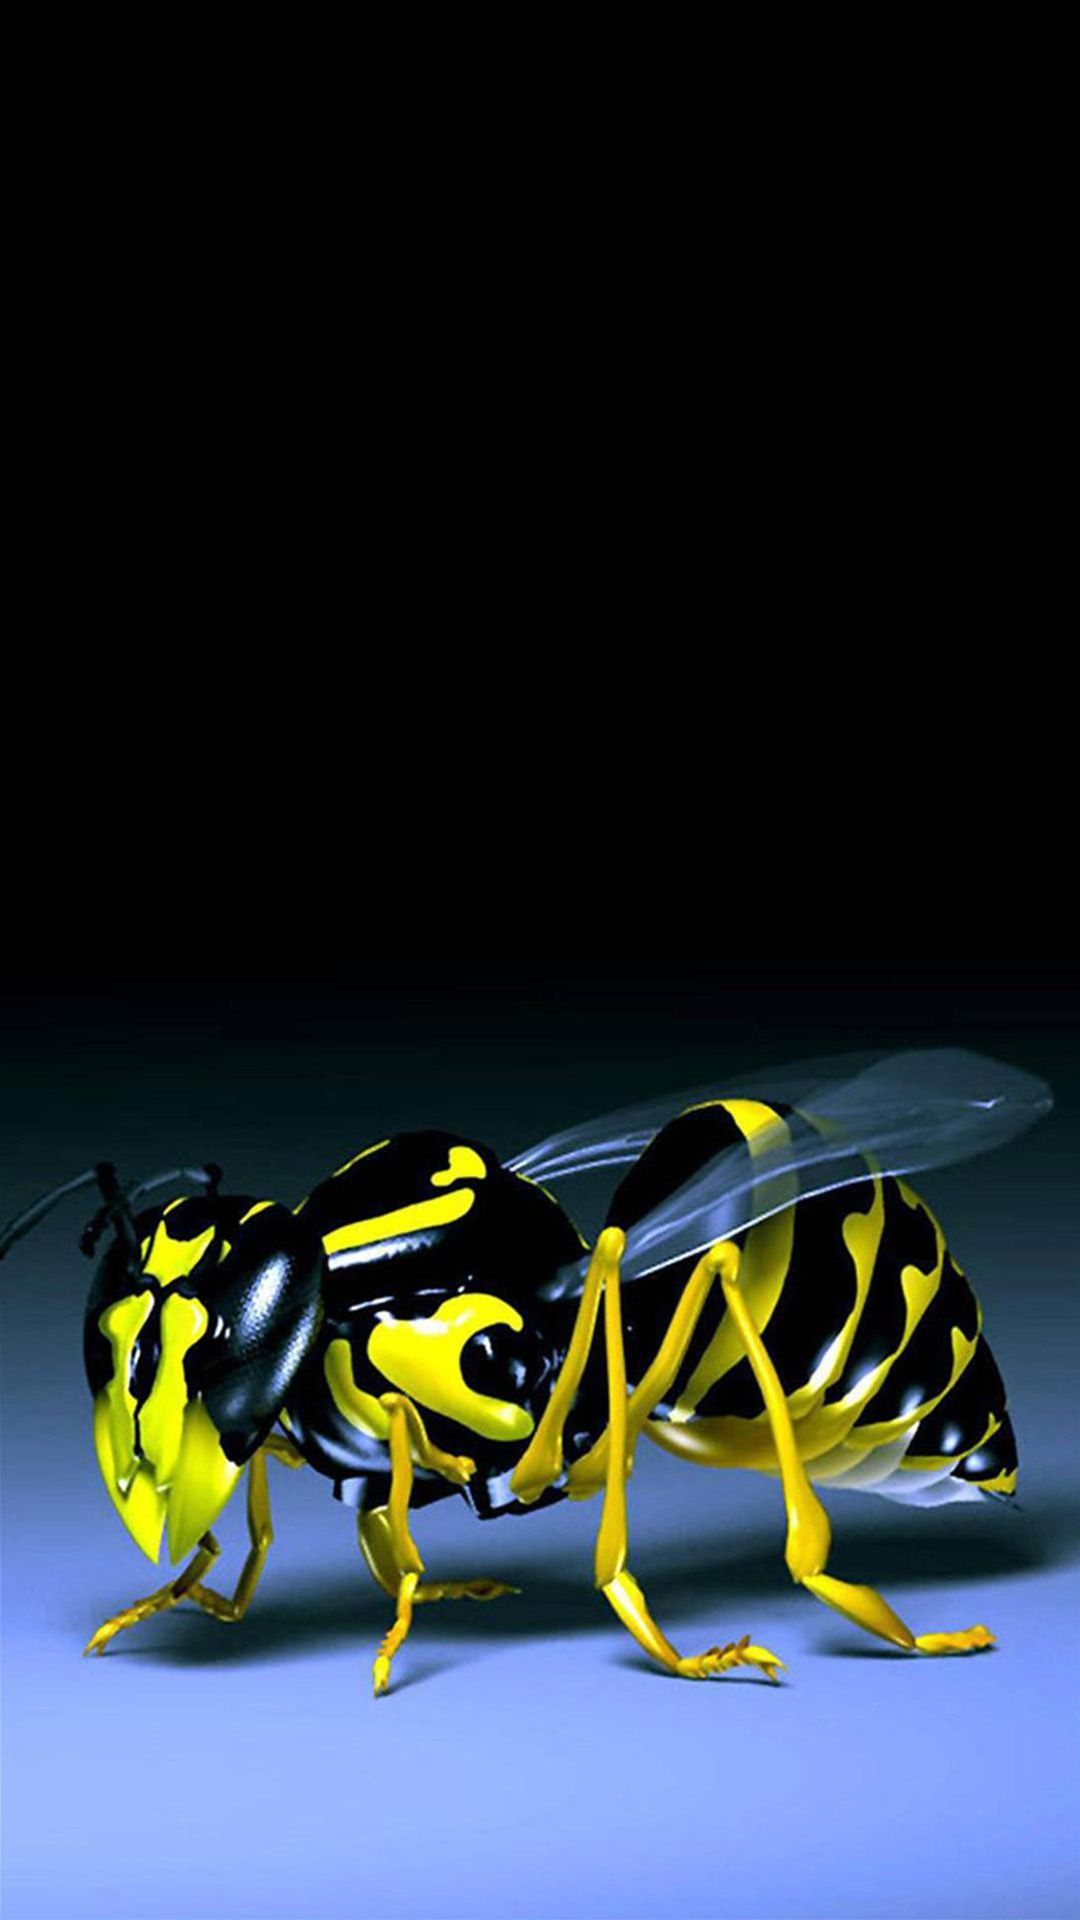 Картина черно желтая. Желто черный. Пчела. Синяя пчела. Пчела 3d.